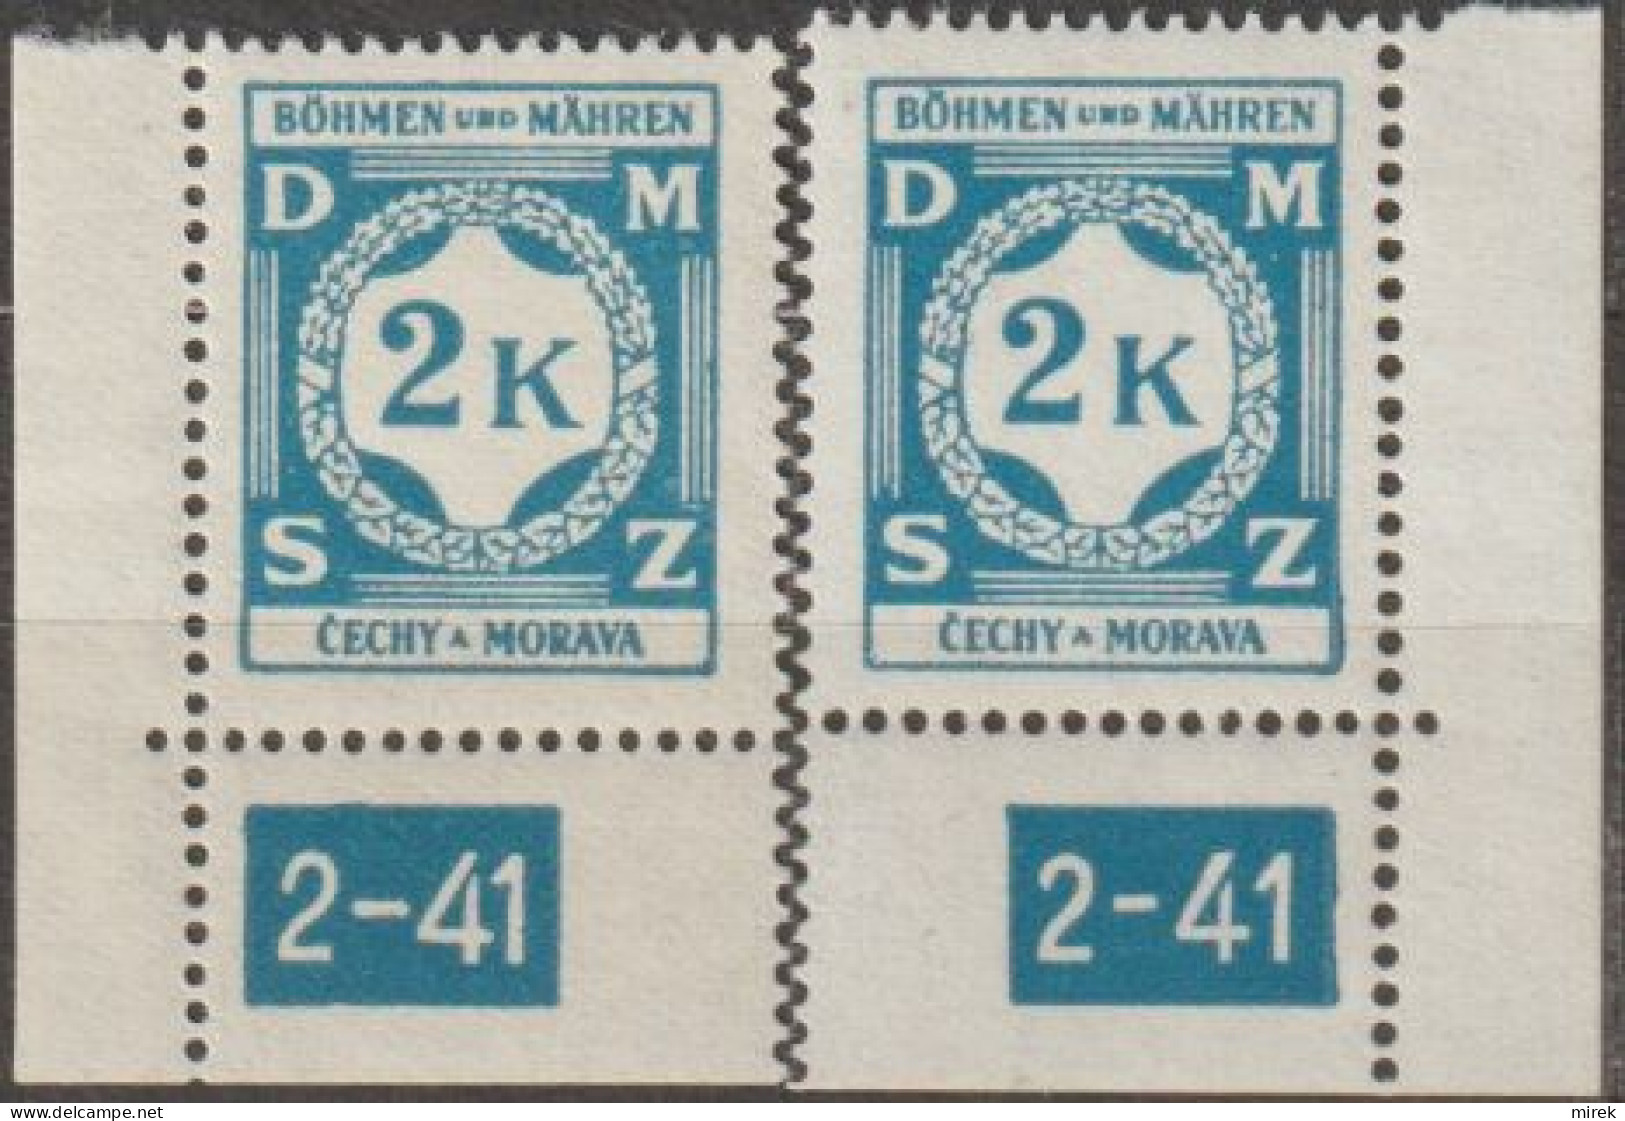 32/ Pof. SL 9, Corner Stamps, Plate Number 2-41 - Ungebraucht